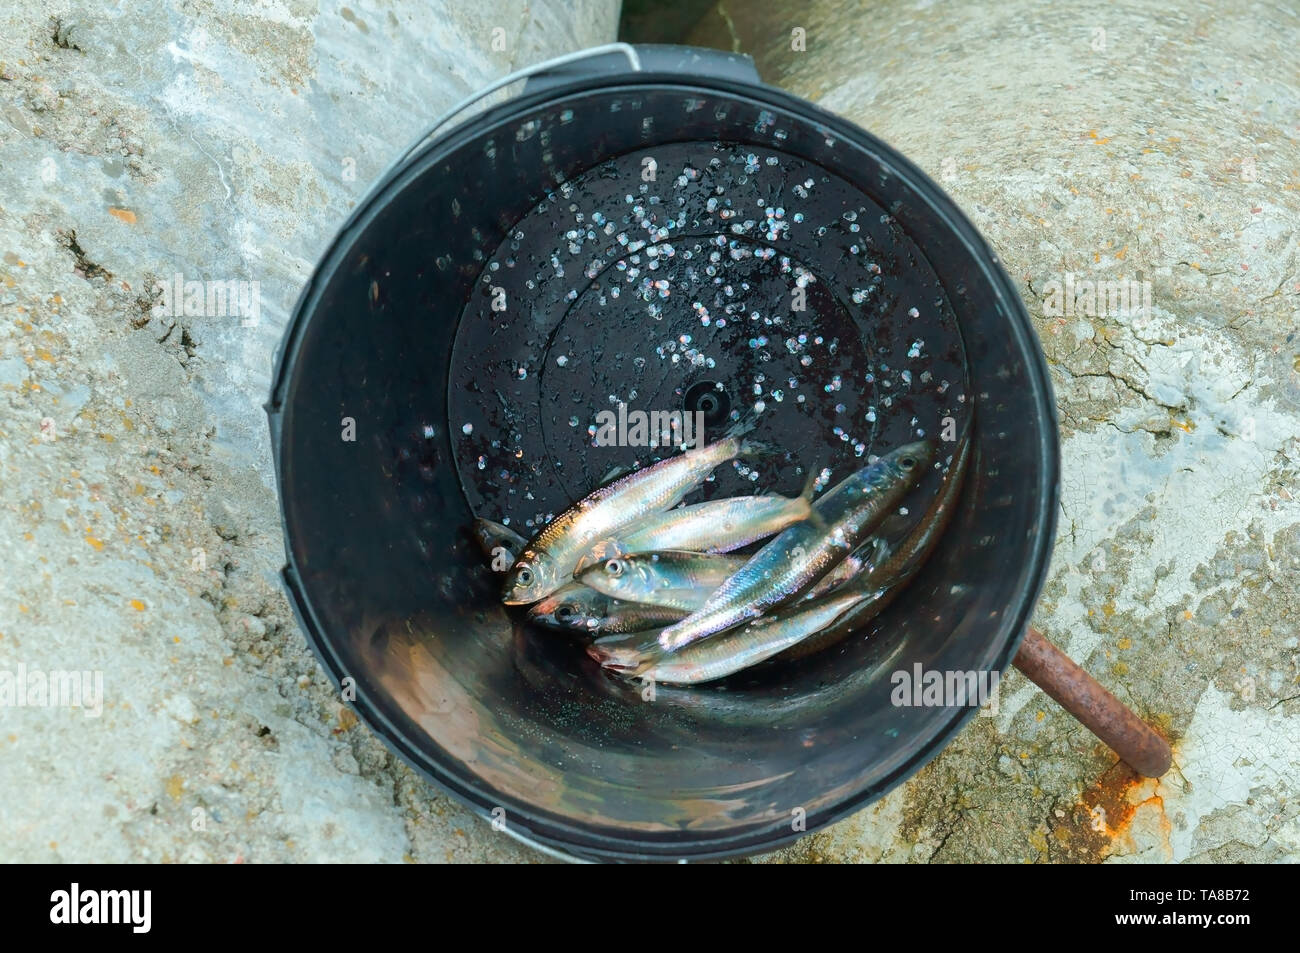 Hareng dans une benne, des poissons fraîchement pêchés au fond d'un seau Banque D'Images